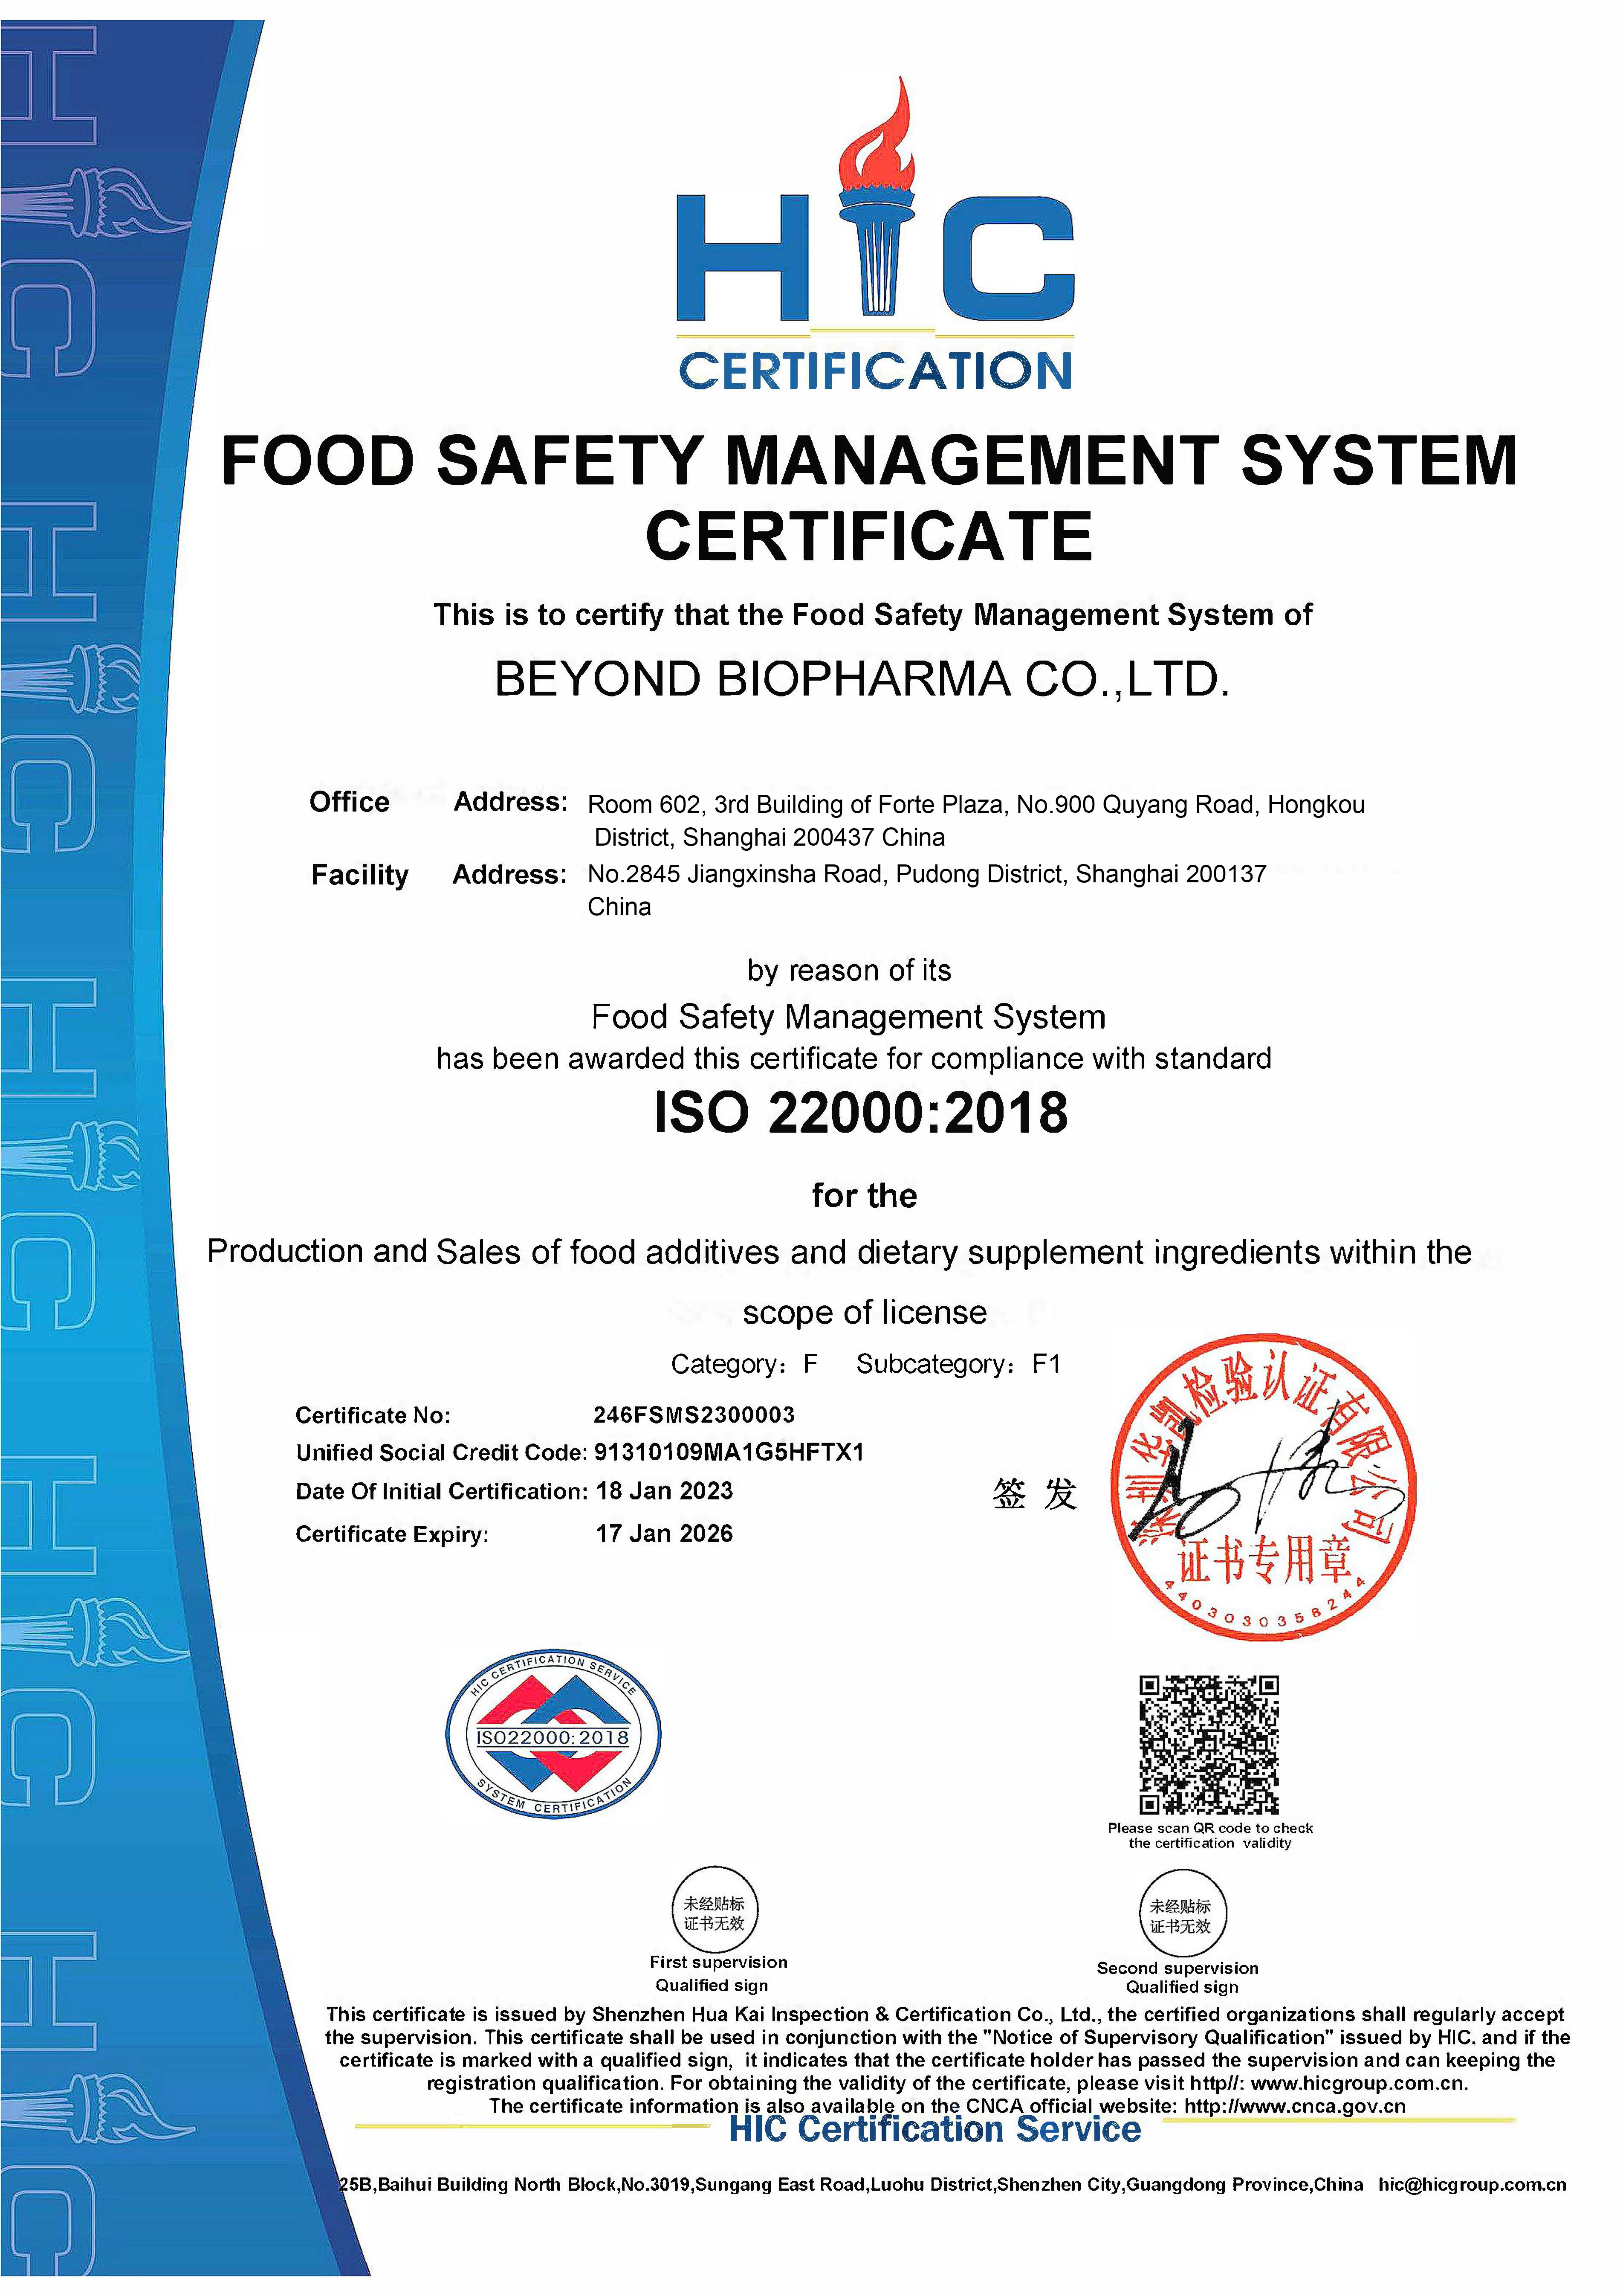 Felicitazioni BEYOND BIOPHARMA CO., LTD hà ottenutu cù successu a certificazione di u sistema di gestione di a sicurezza alimentare ISO22000: 2018!